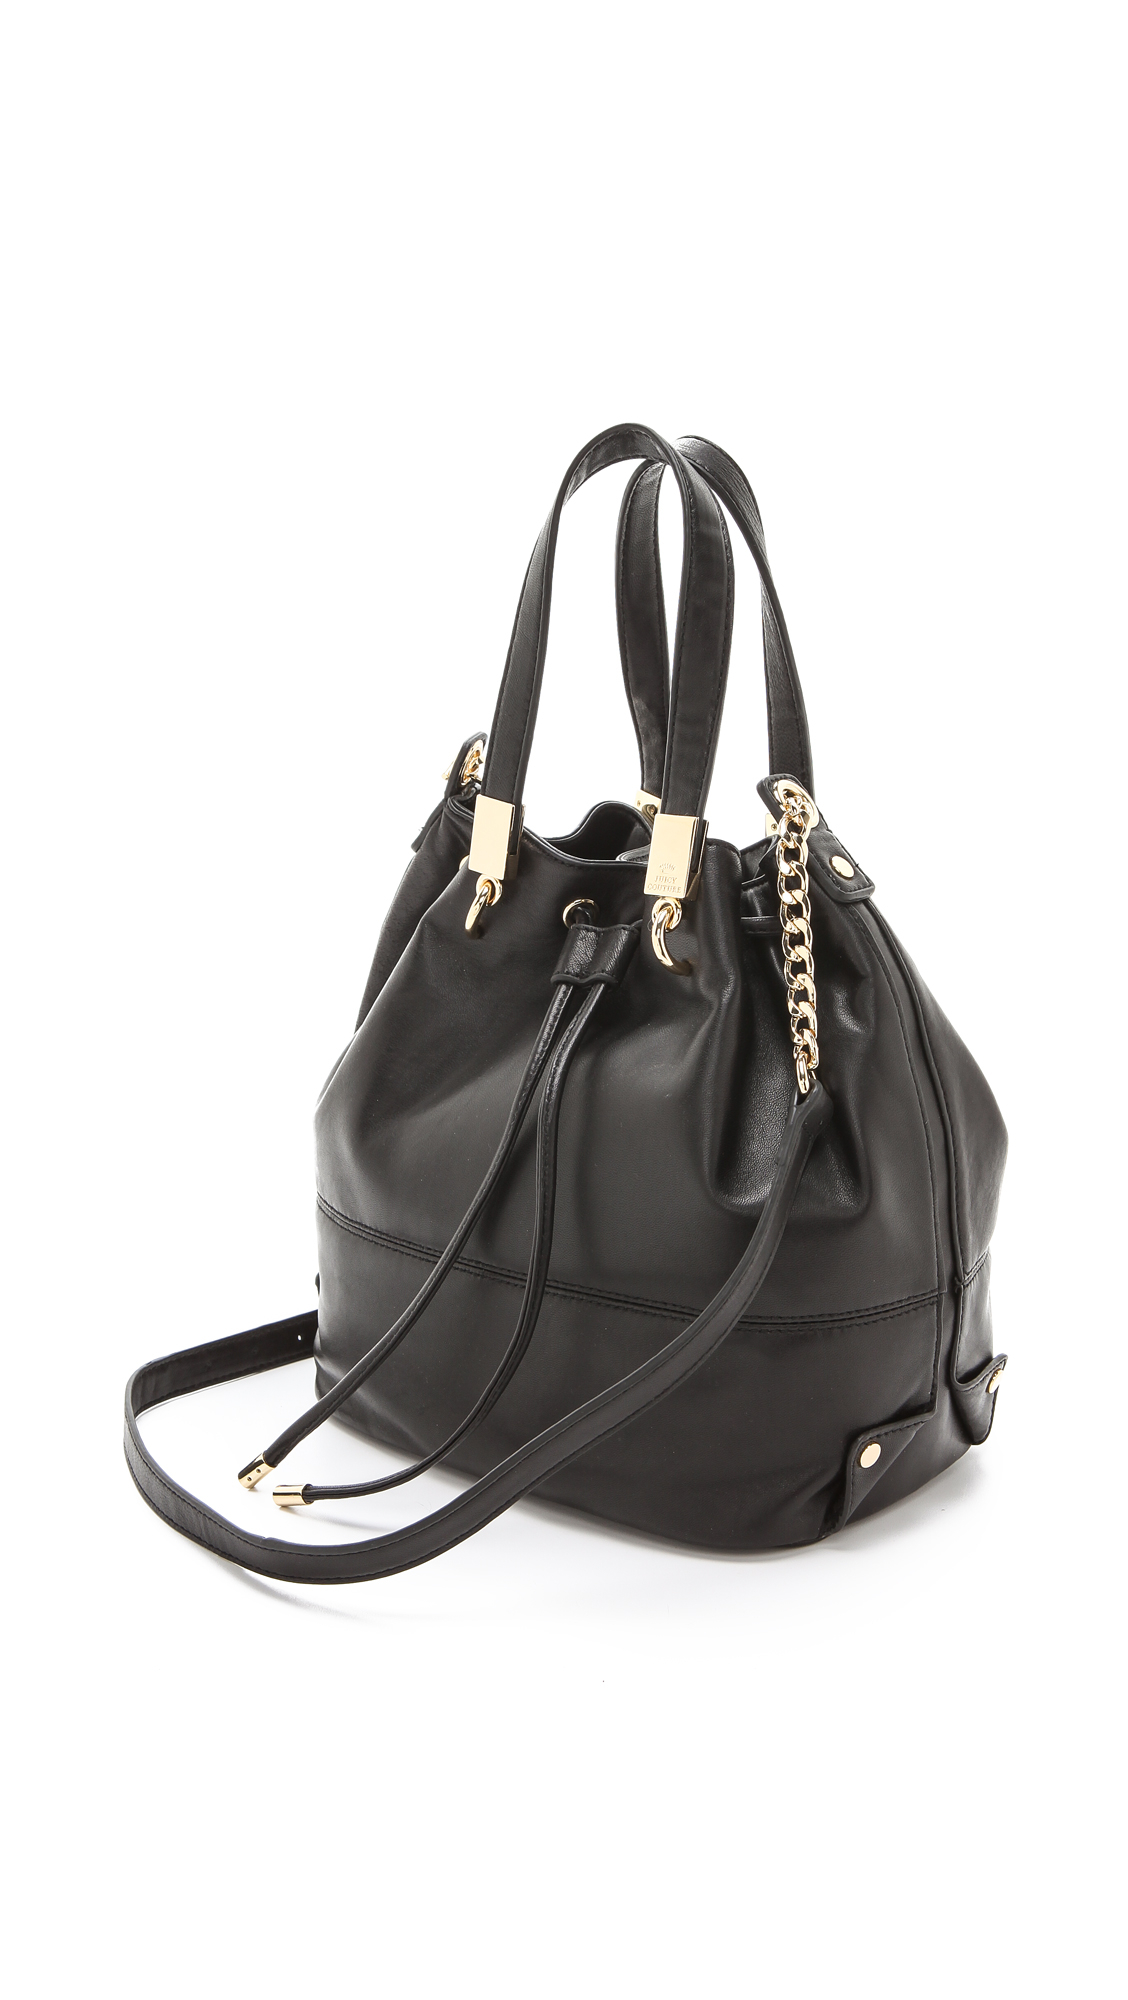 Lyst - Juicy Couture Selma Bucket Bag in Black